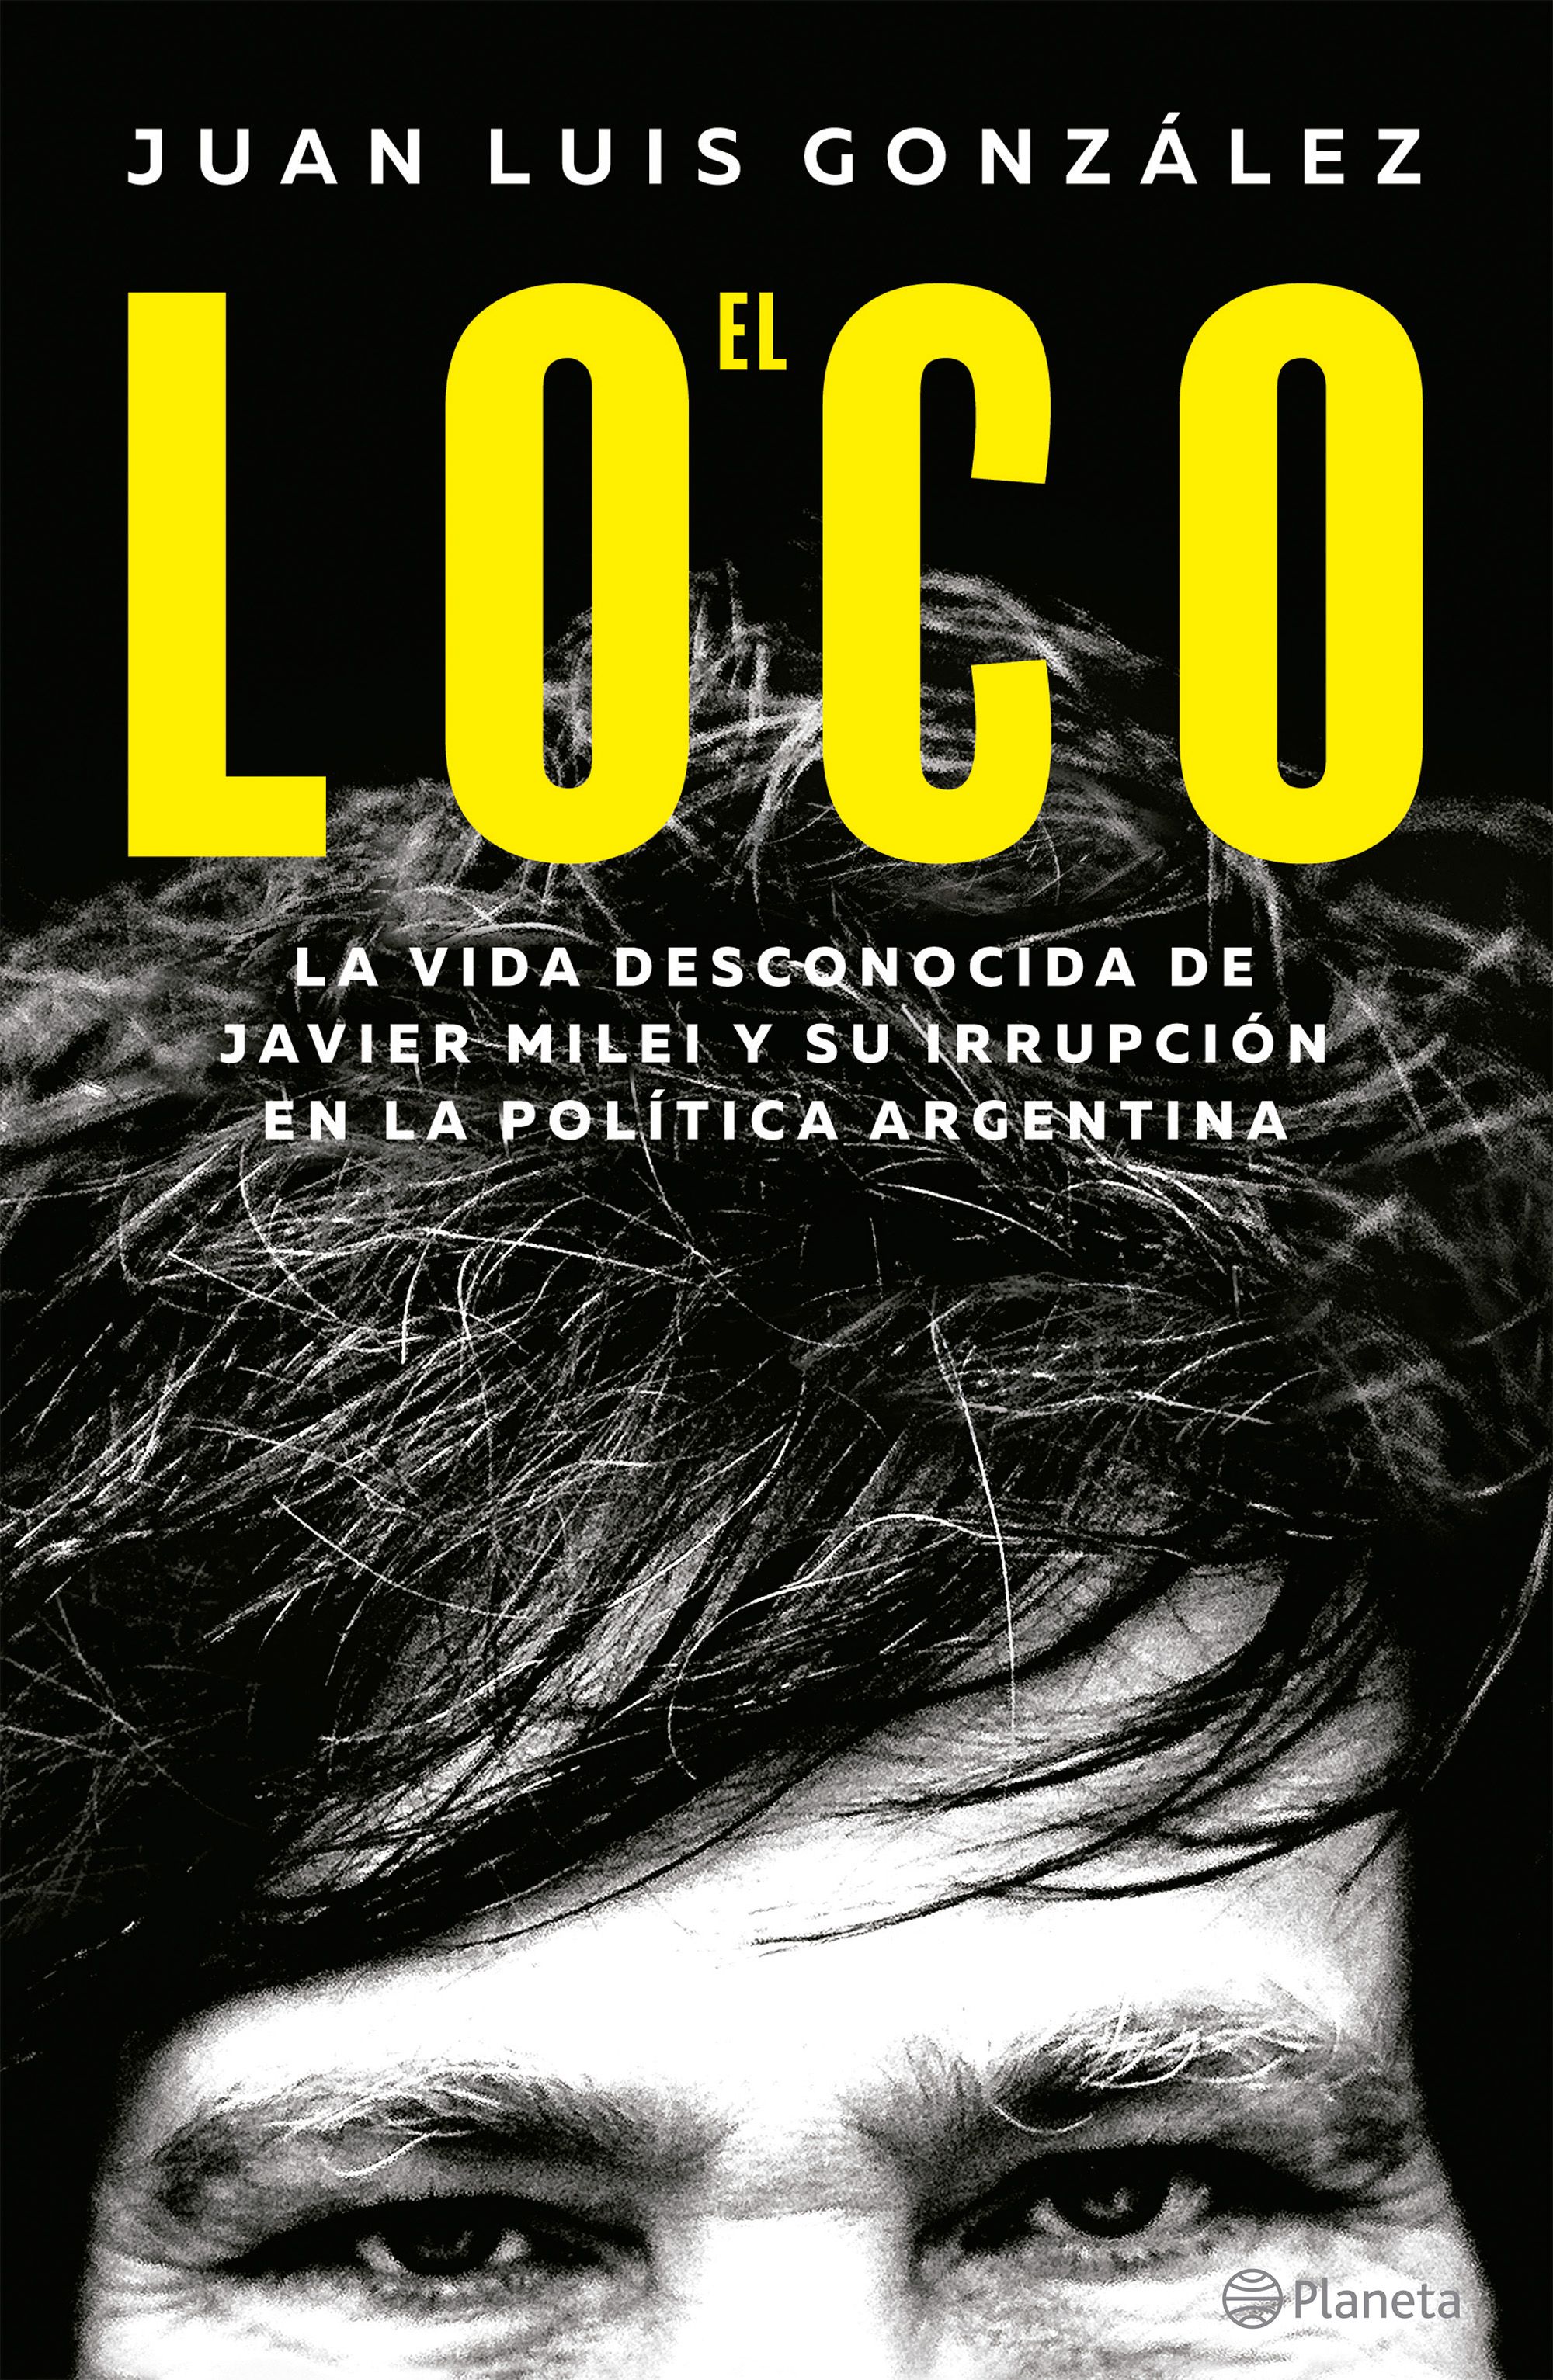 Cover photo of El loco: la vida desconocida de Javier Milei y su irrupción en la política argentina